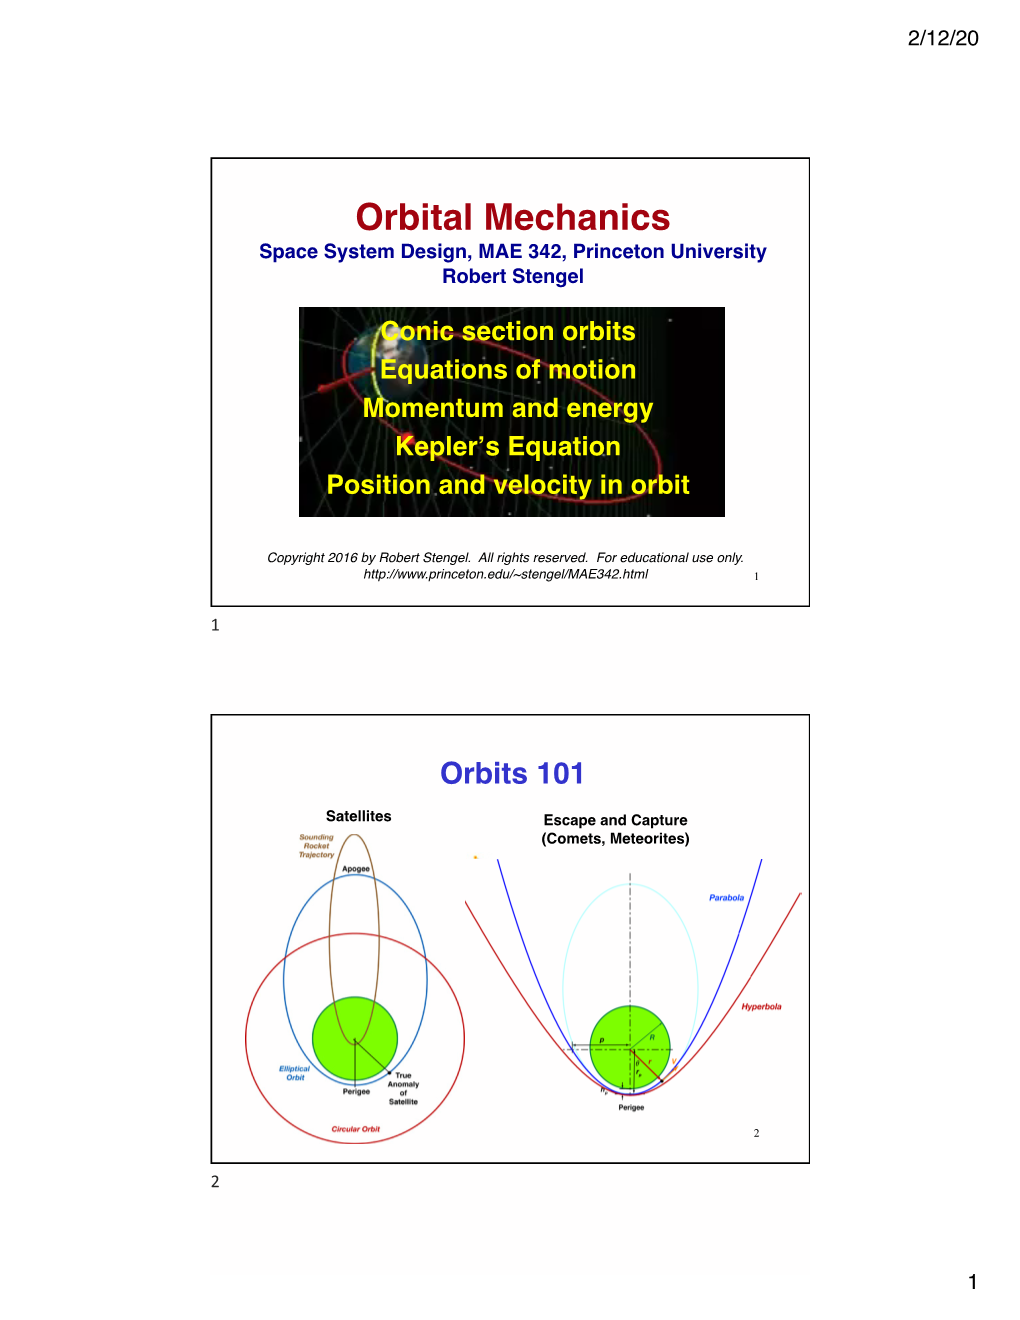 2. Orbital Mechanics MAE 342 2016